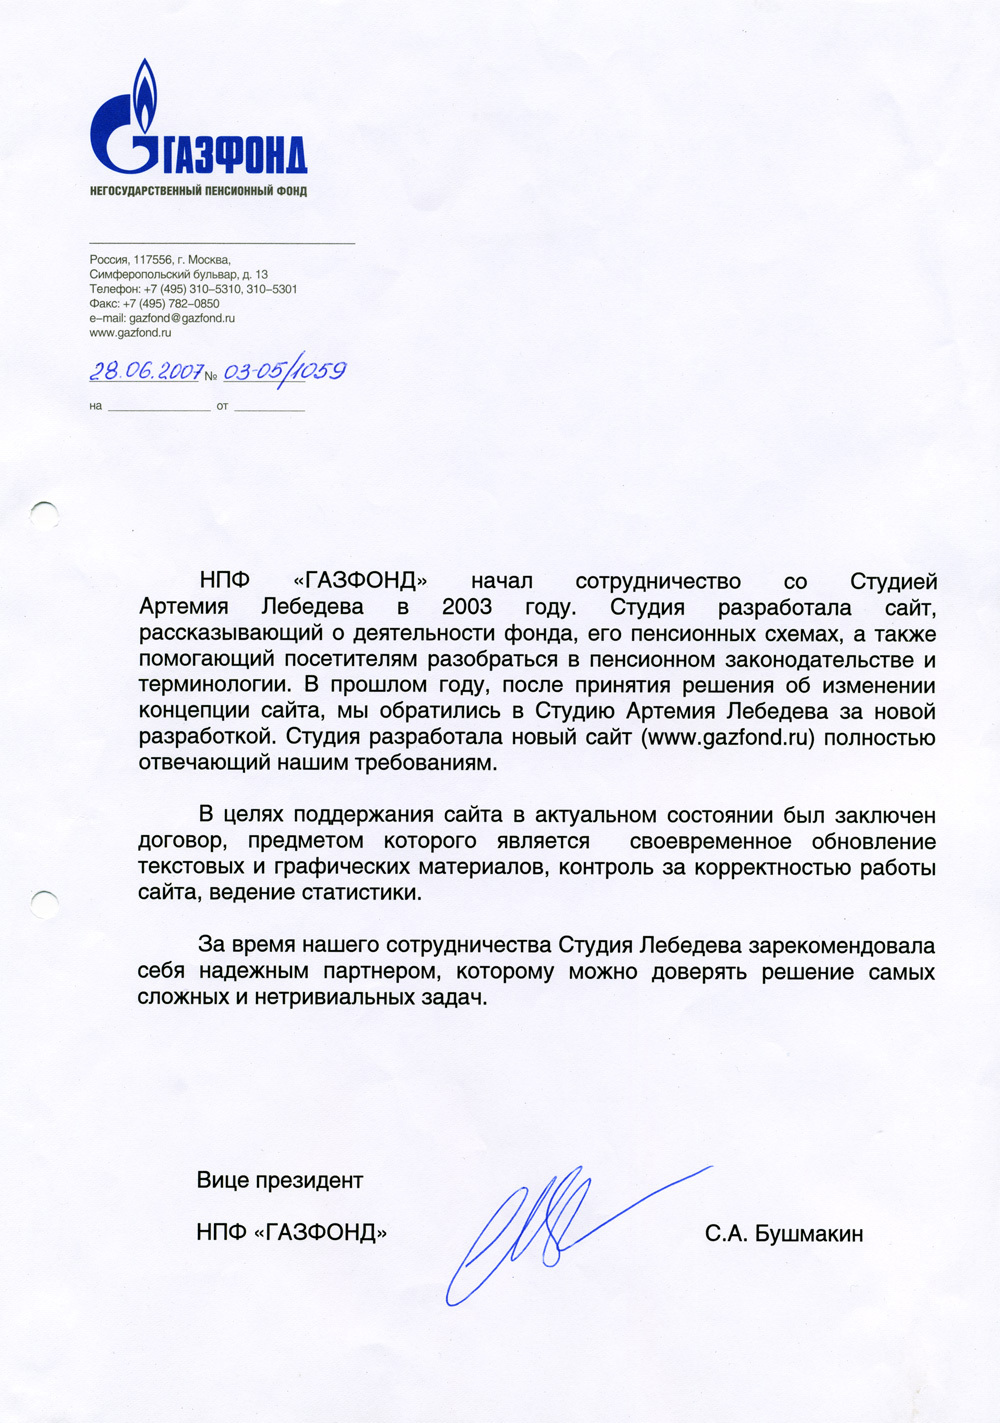 Газфонд пенсионные накопления заявление. Заявление в НПФ Газфонд негосударственный. Рекомендательное письмо для Газпромнефти.